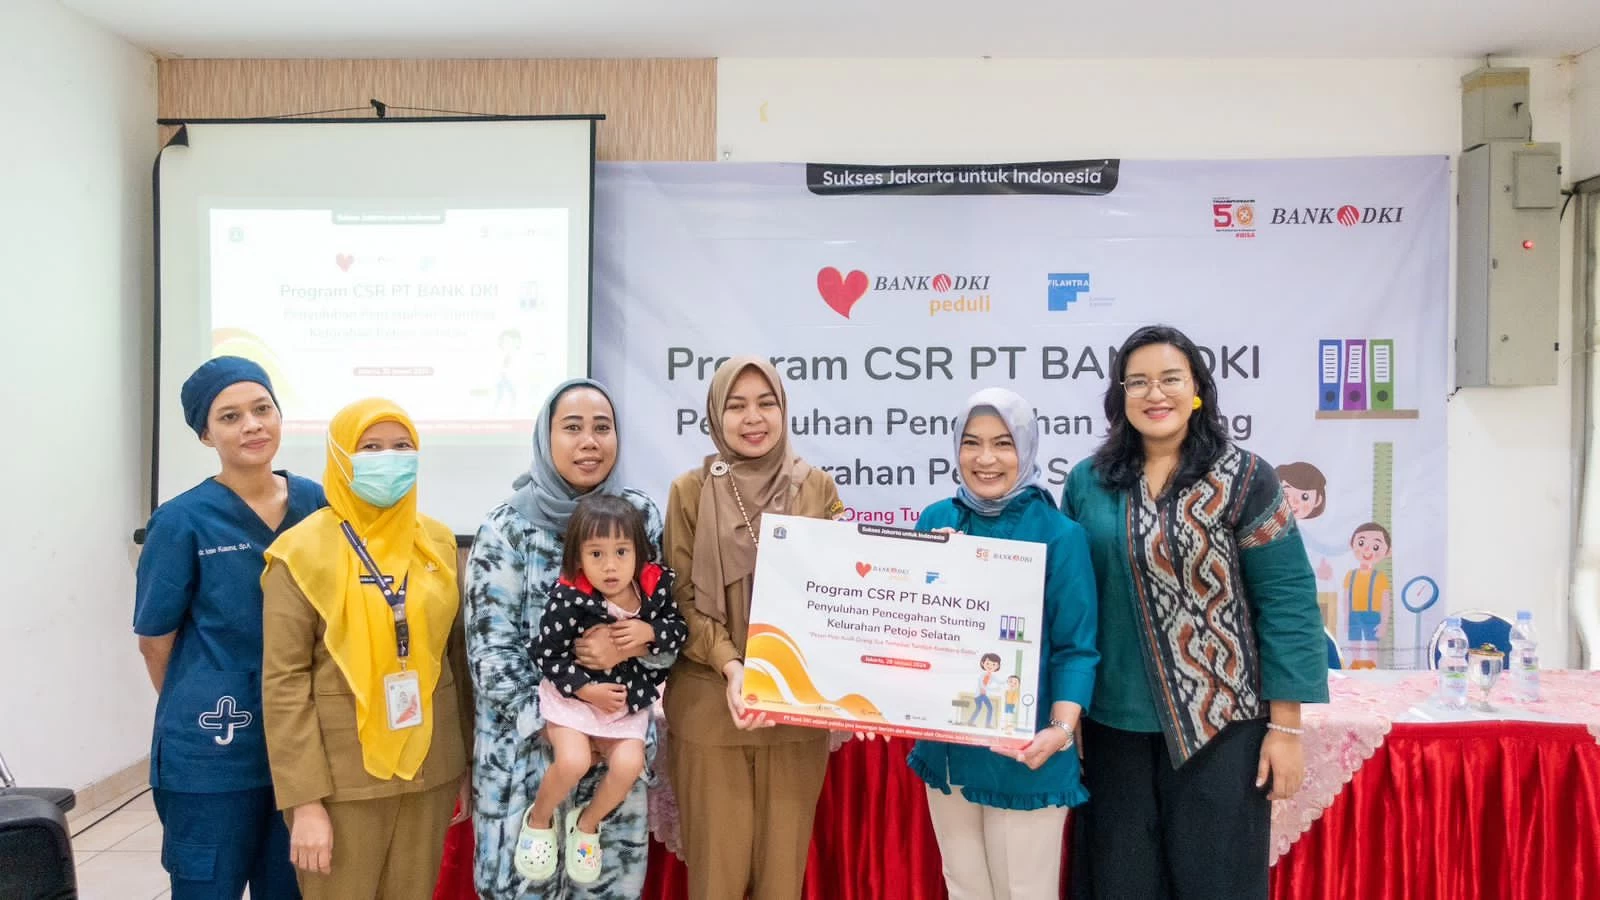 Bank DKI Kontribusi Program Pemberian Nutrisi Cukup untuk Pengatasan Stunting di Jakarta